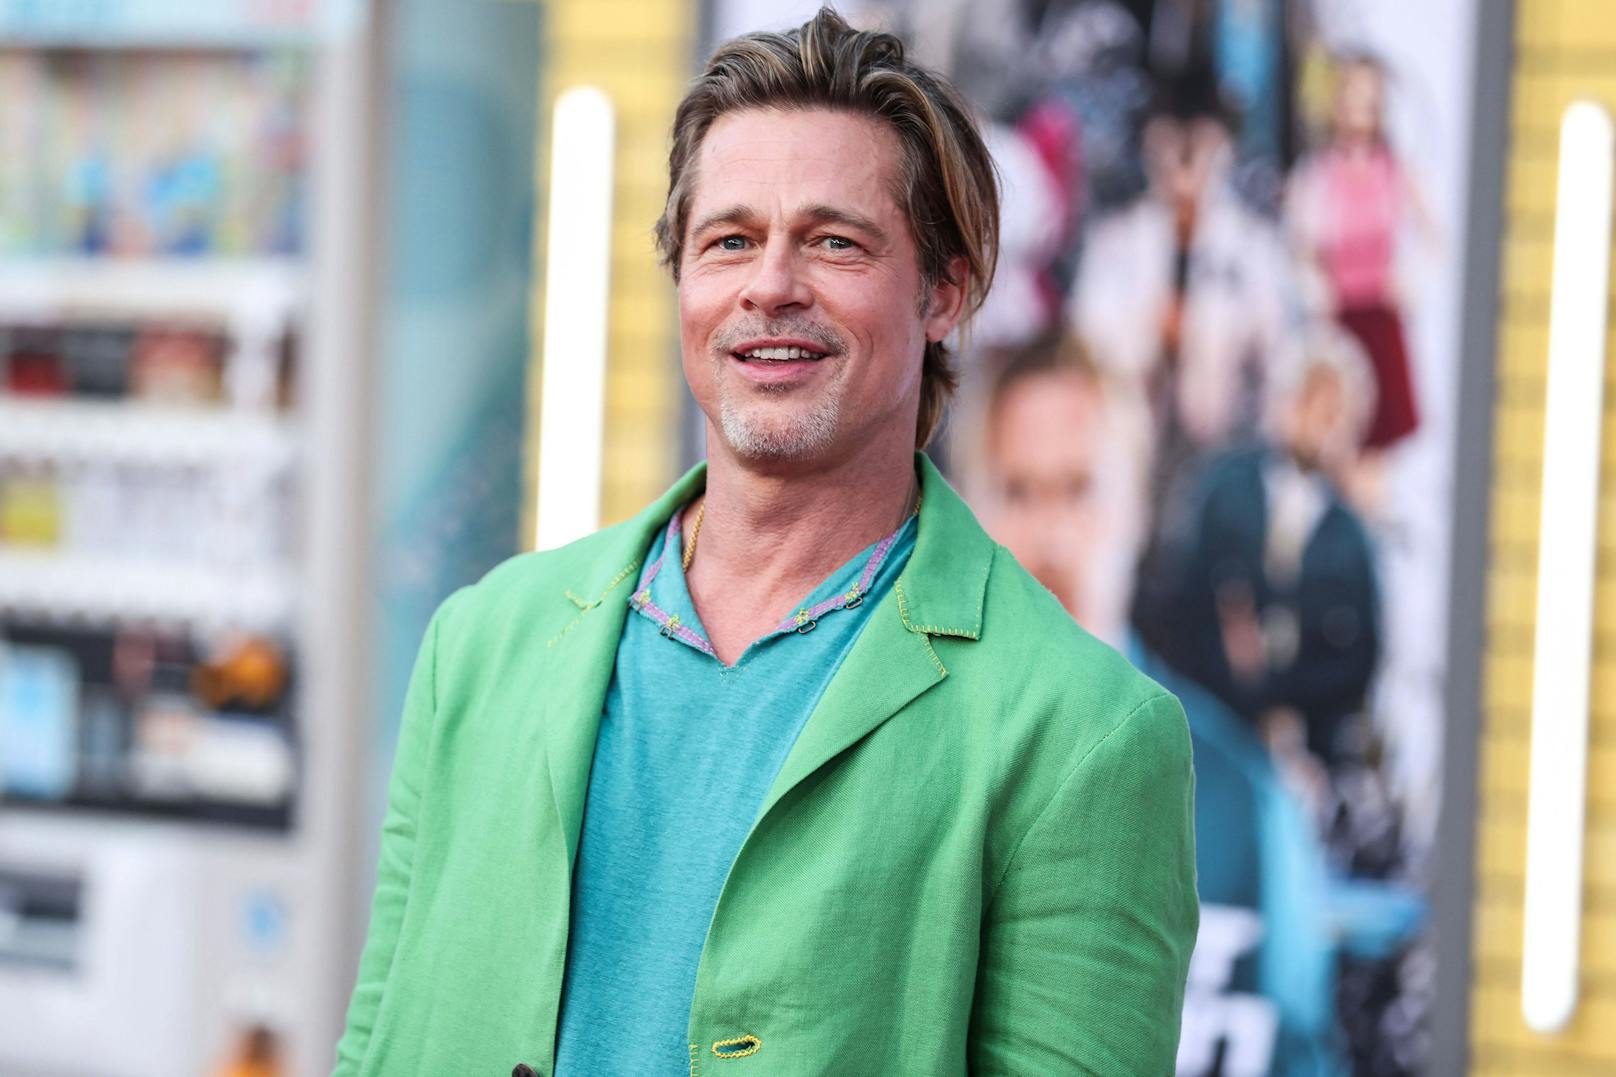 Auf Wolke Sieben: Brad Pitt (58) datet Jungspund (29)